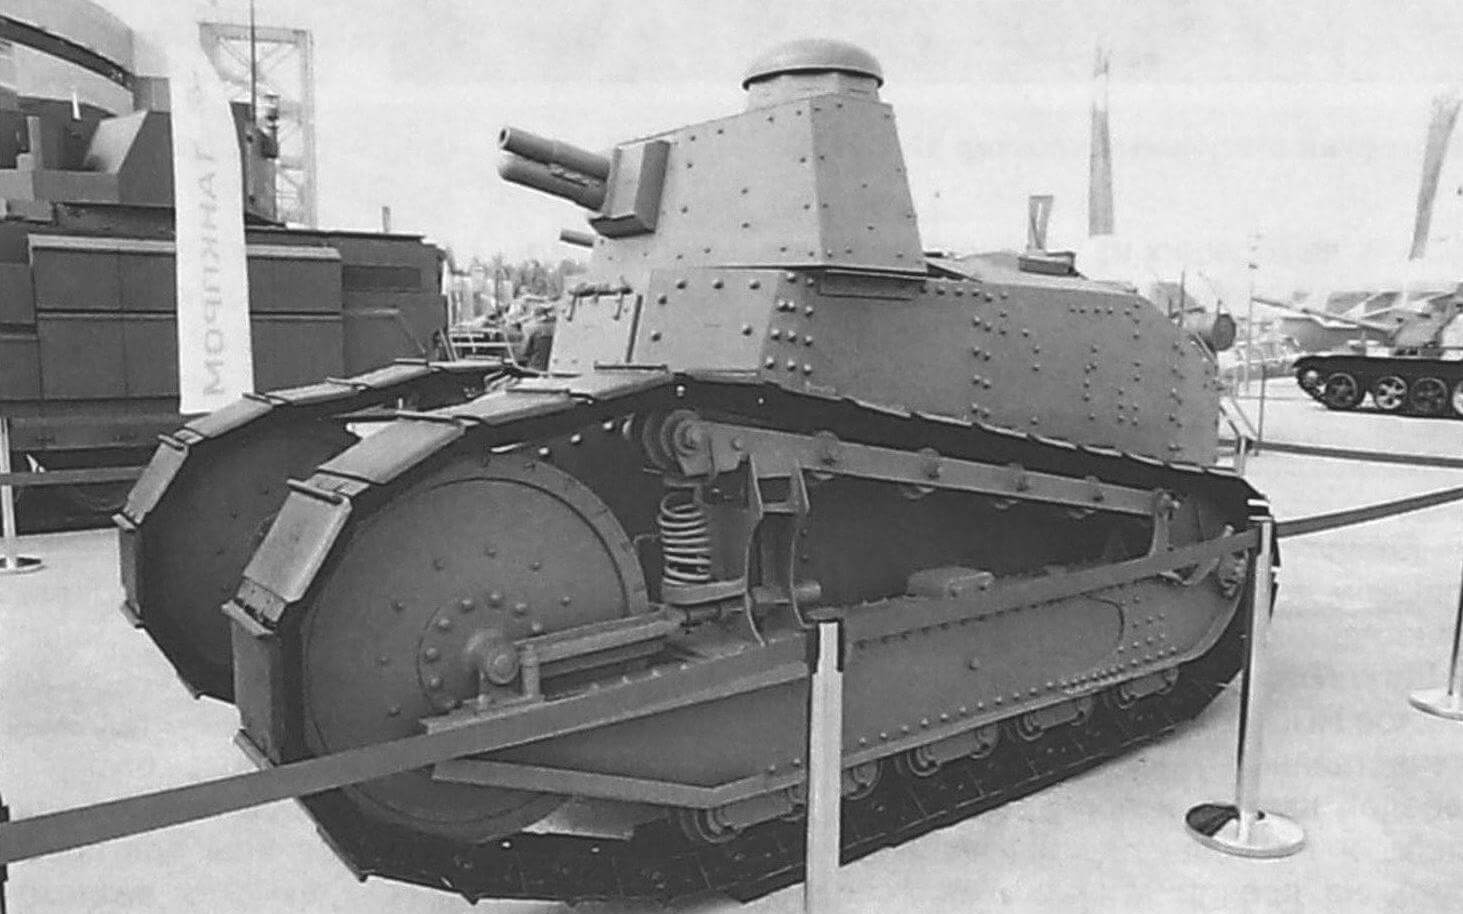 Конструкция мерных советских танков была скопирована с Renault. На фото - танк типа-М, выпушенный в 1920 году в Нижнем Новгороде на Сормовском заводе